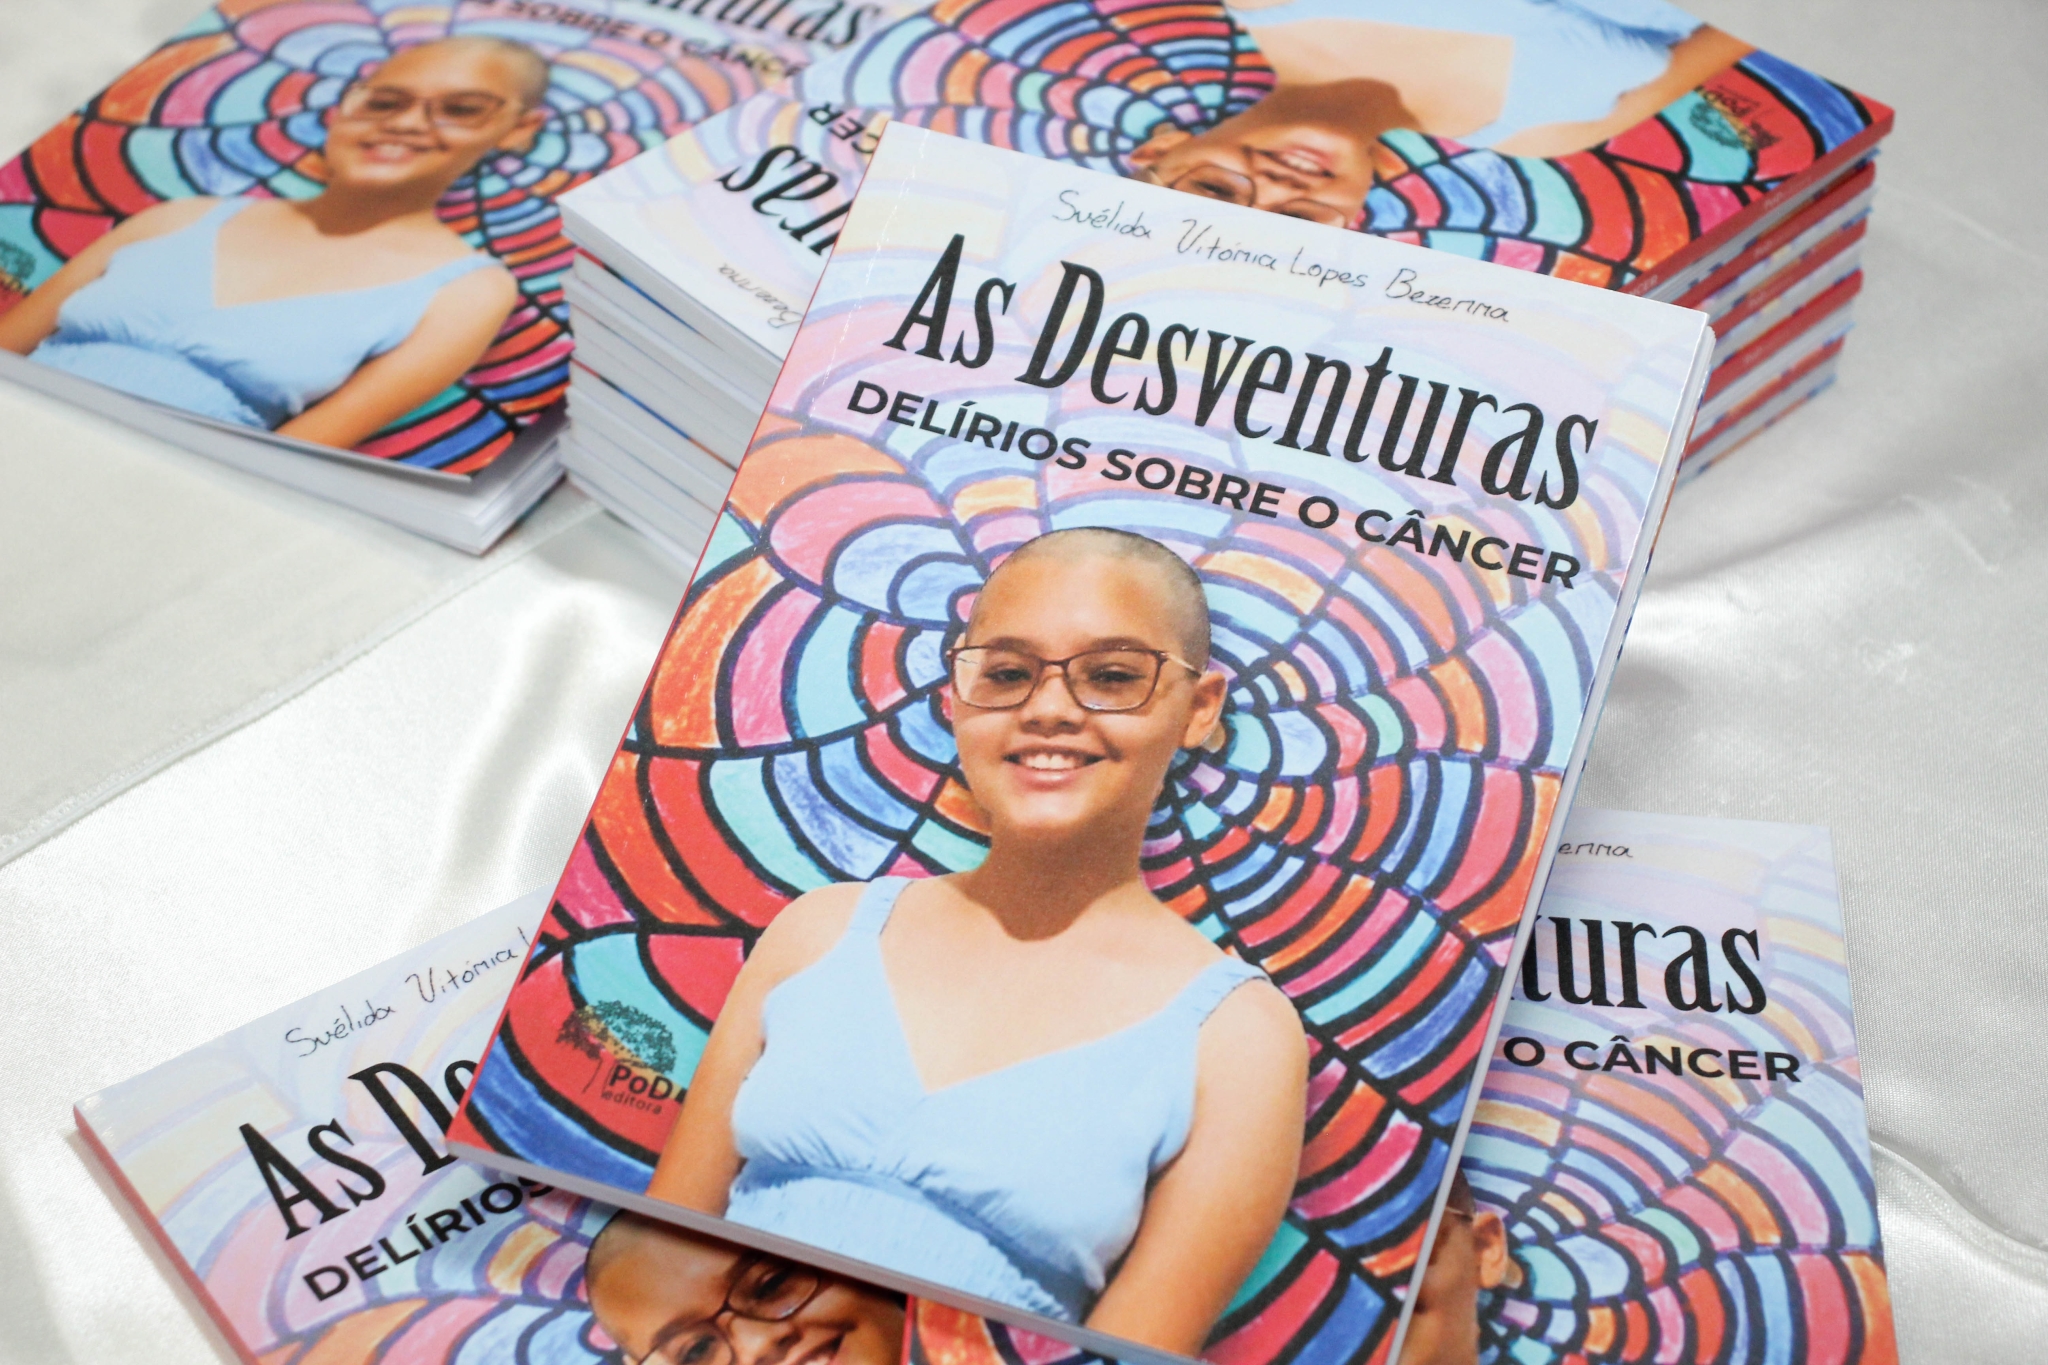 Lançamento do Livro “As Desventuras - Delírios sobre o Câncer” de Suélida Vitória Lopes Bezerra